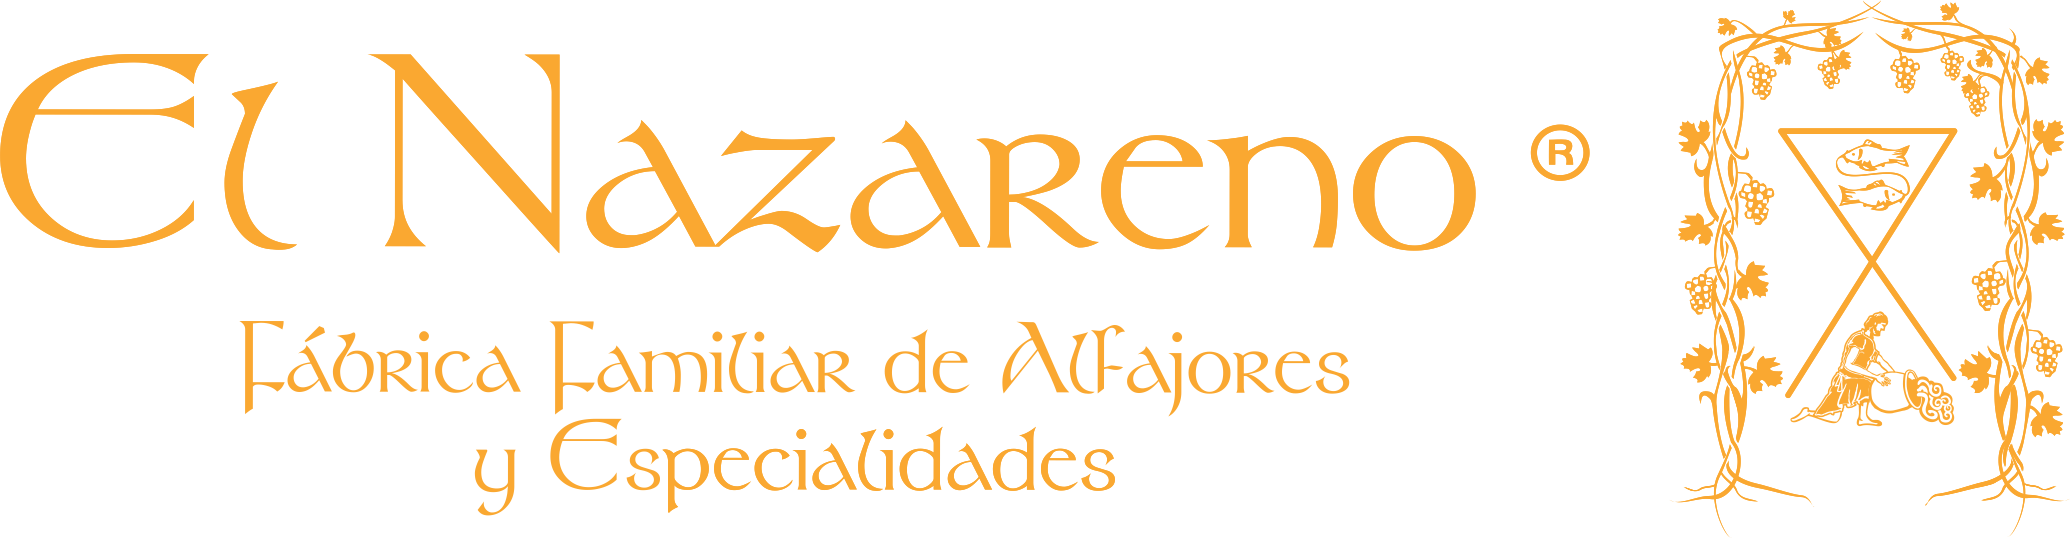 El Nazareno